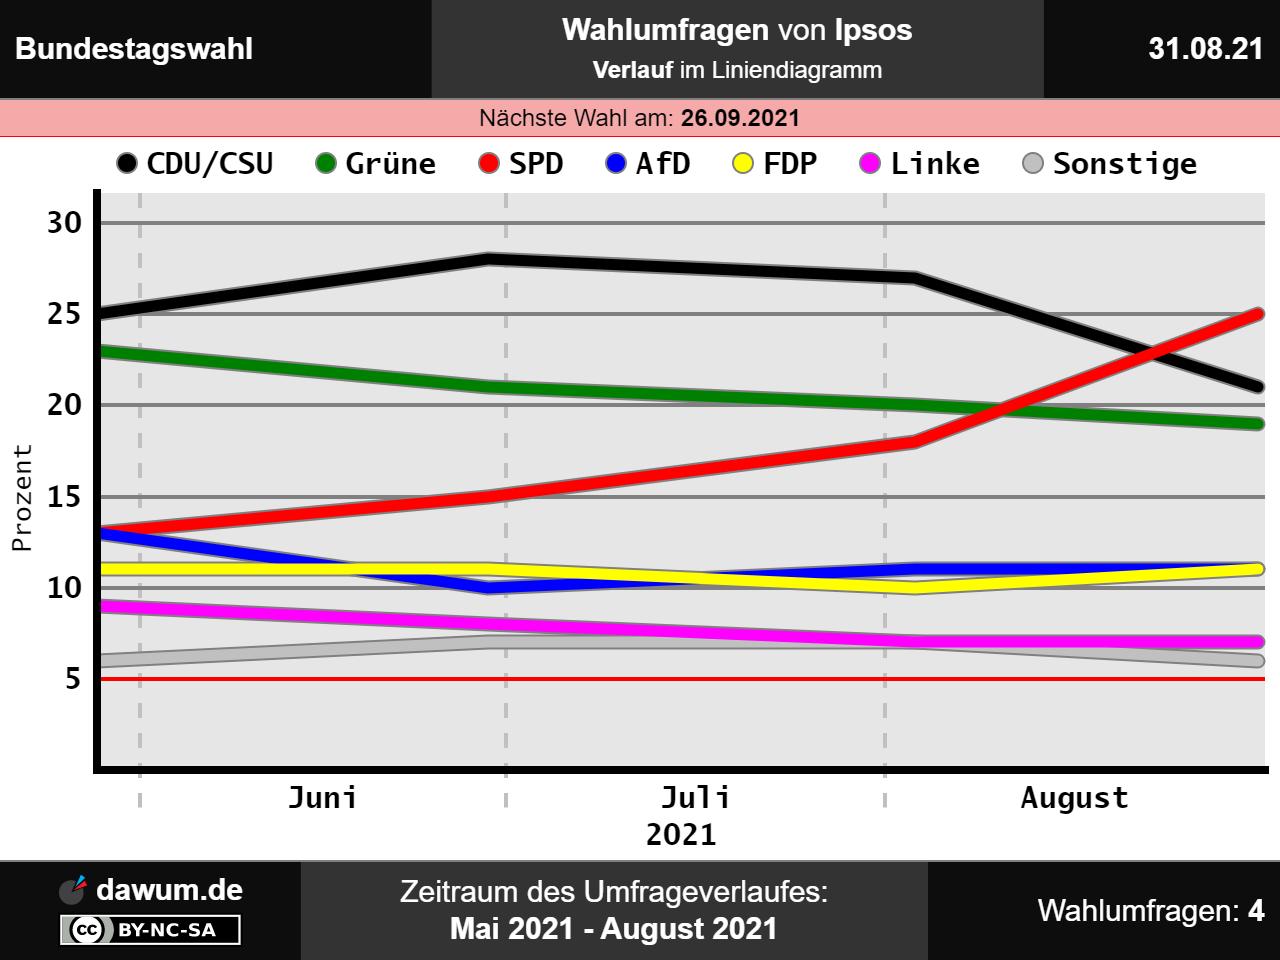 Stell dir vor, es sind Wahlen und die #CDU/CSU stellt die größte Oppositionspartei im Bundestag..